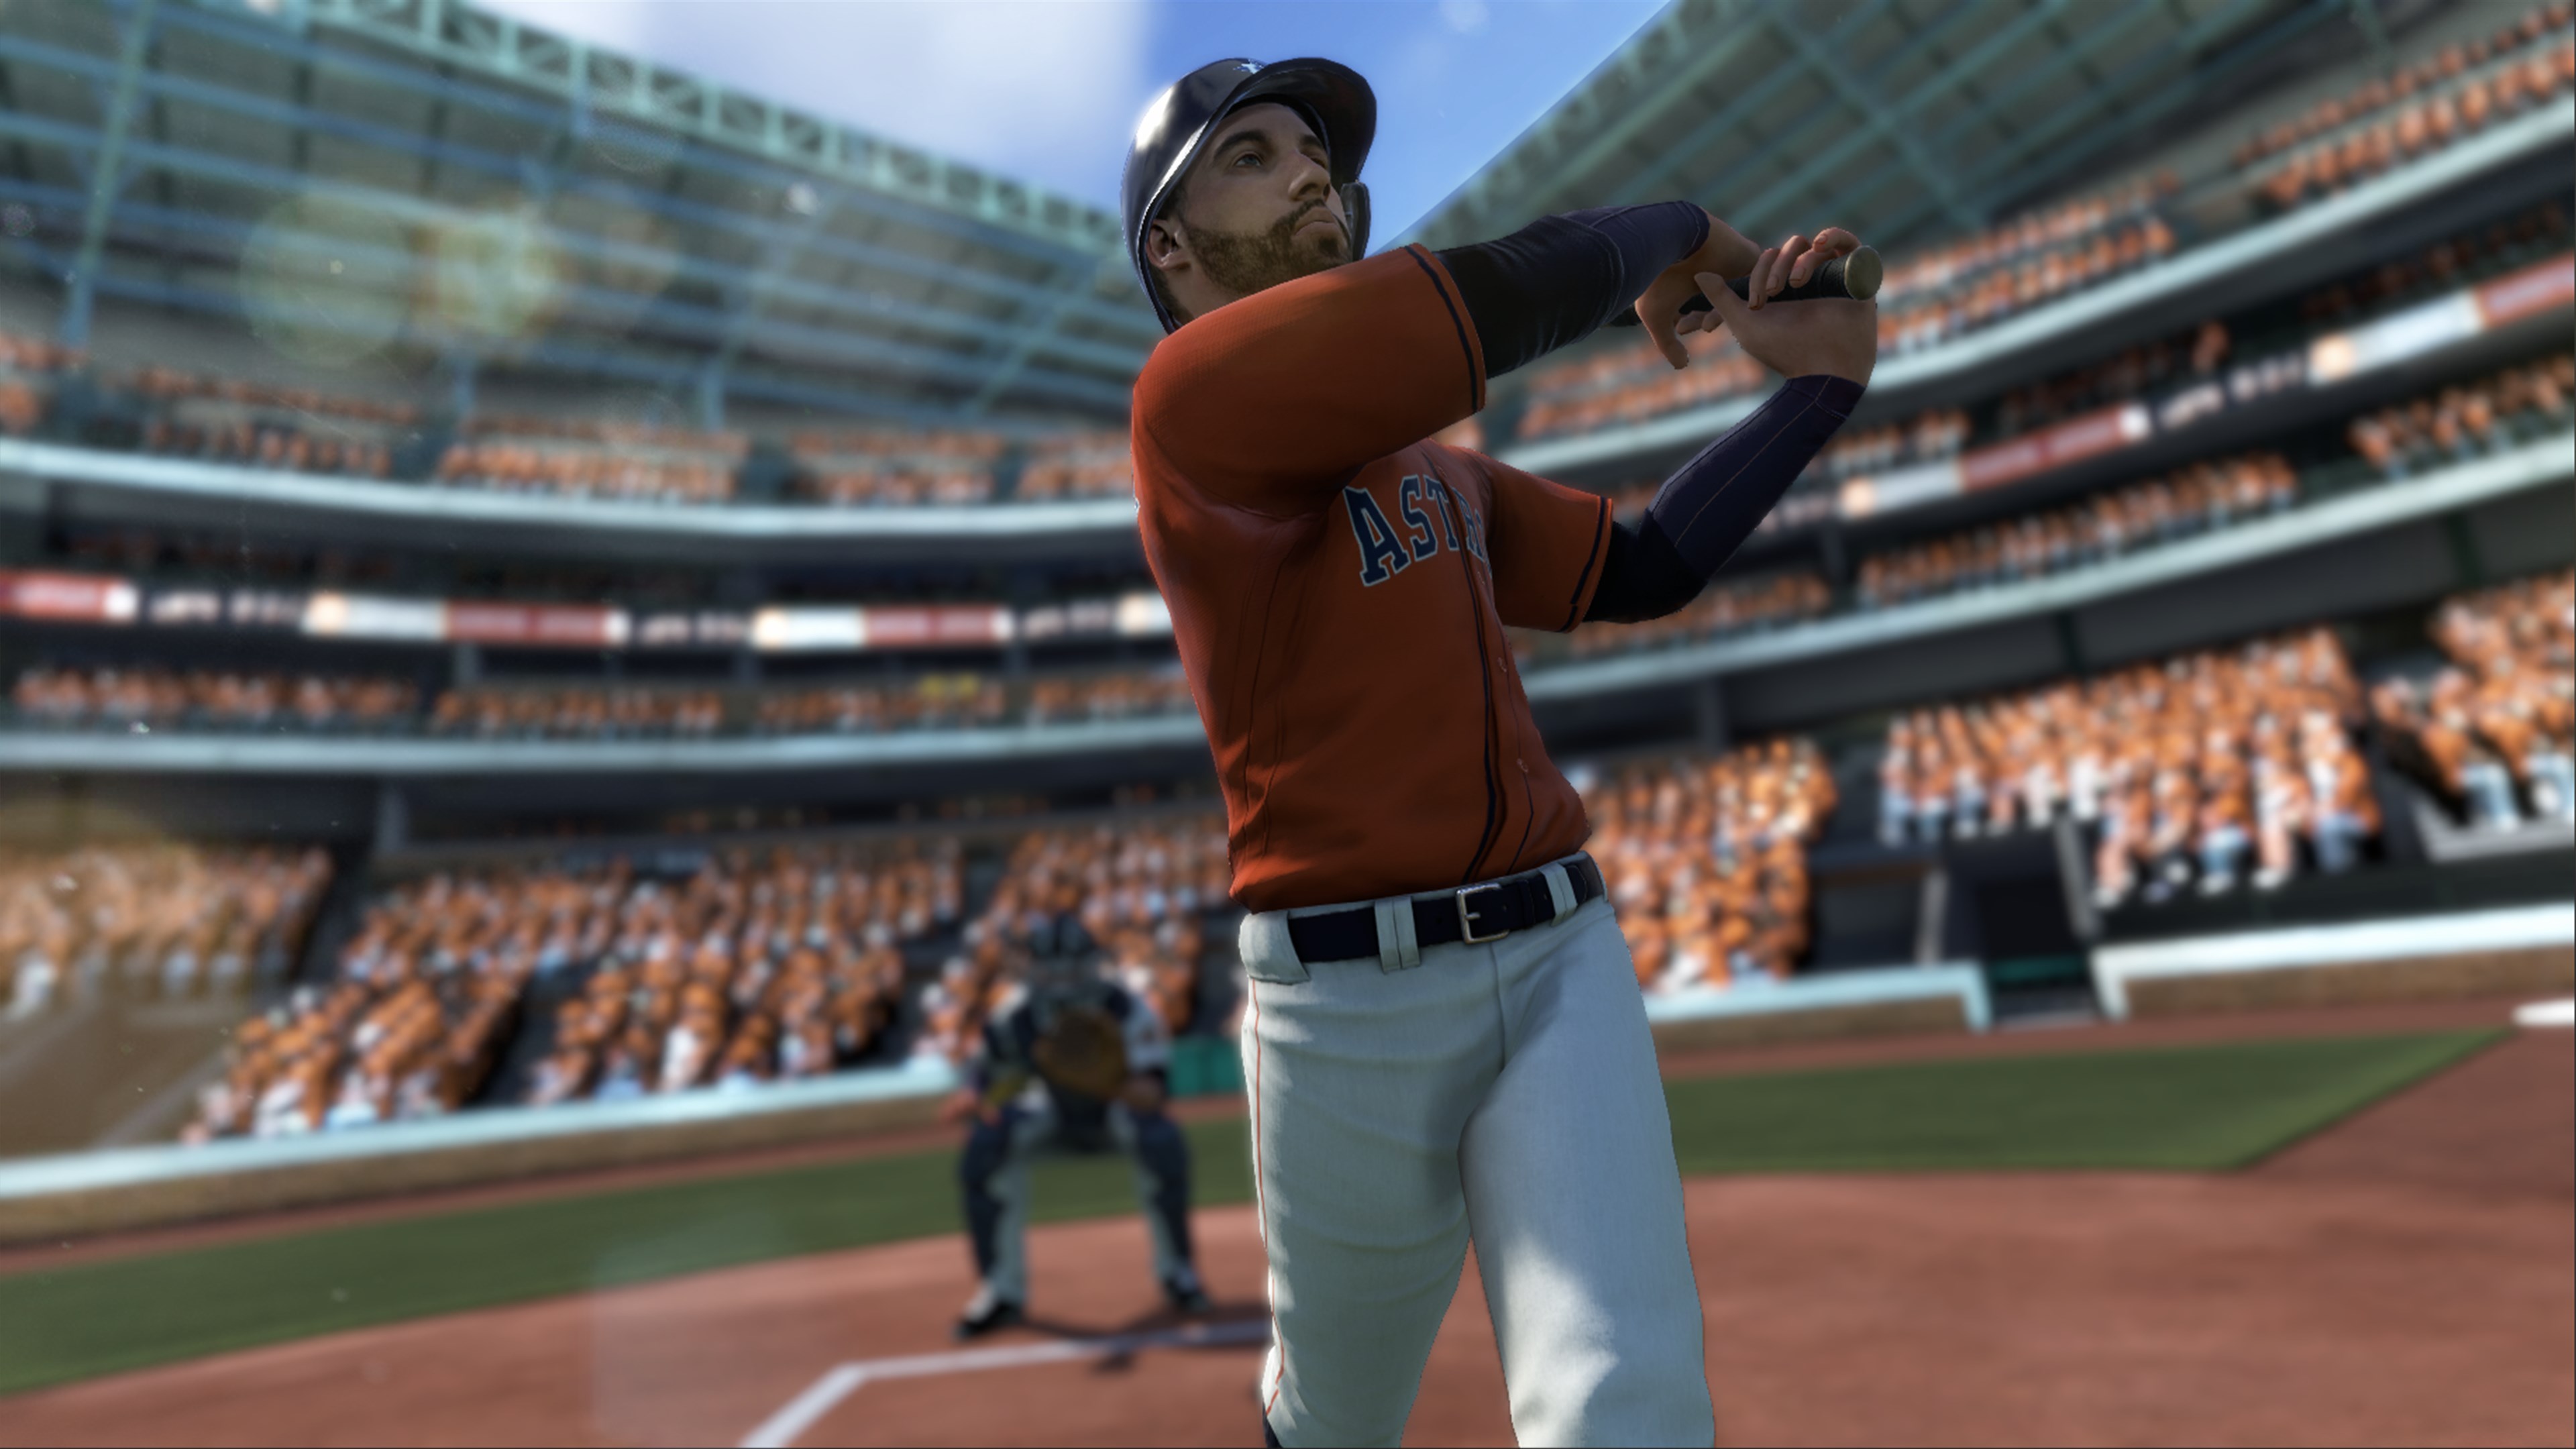 R.B.I. Baseball 18 XBOX One / Xbox Series X|S CD Key, 56.49 usd